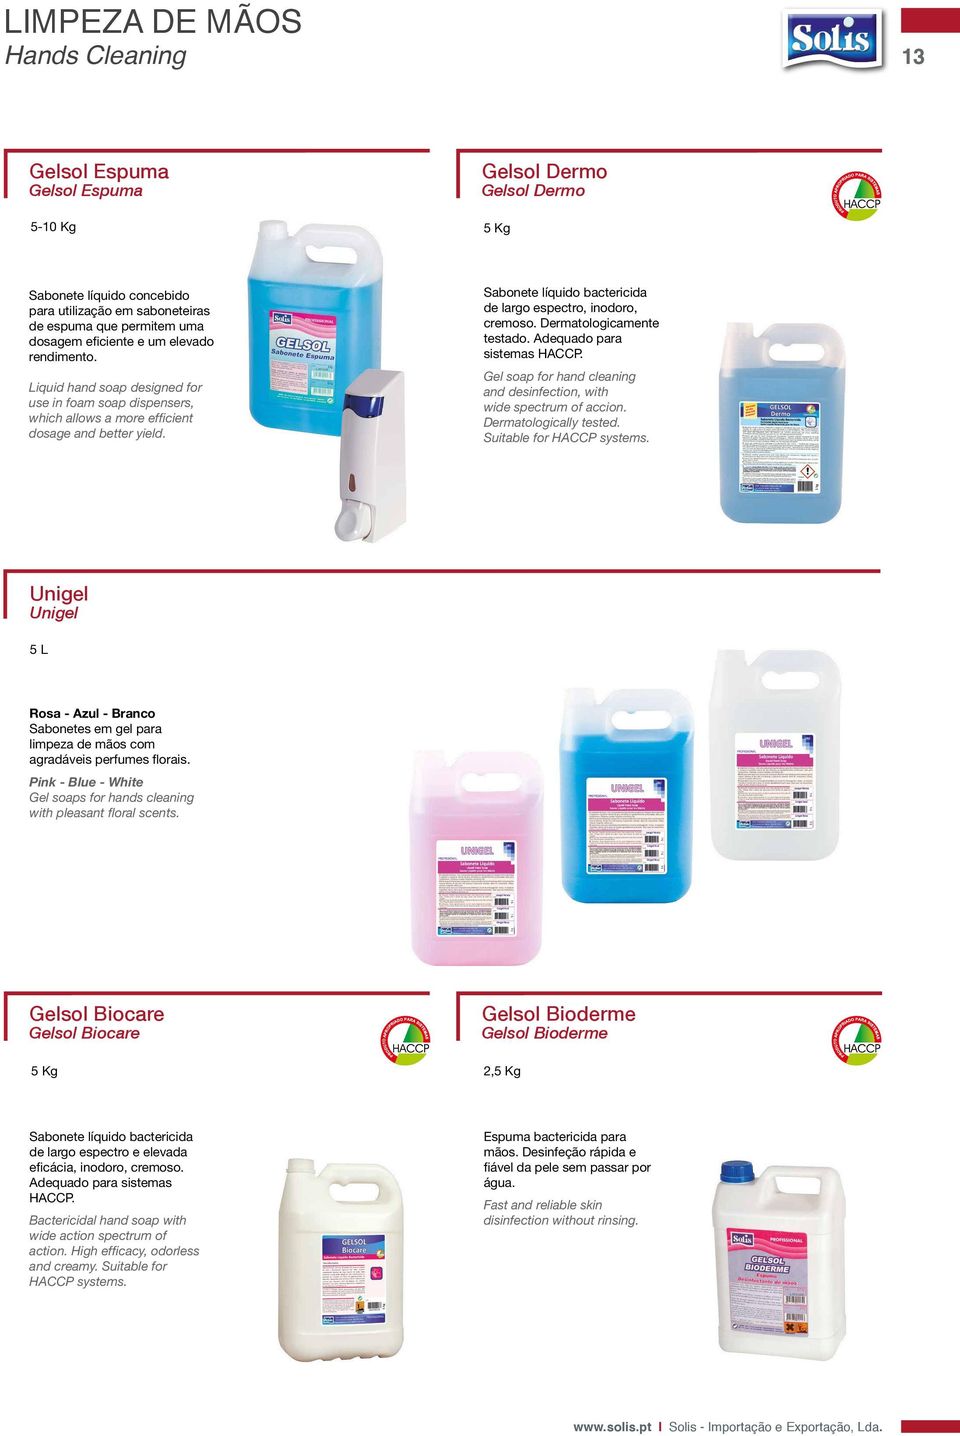 Sabonete líquido bactericida de largo espectro, inodoro, cremoso. Dermatologicamente testado. Adequado para sistemas HACCP. Gel soap for hand cleaning and desinfection, with wide spectrum of accion.